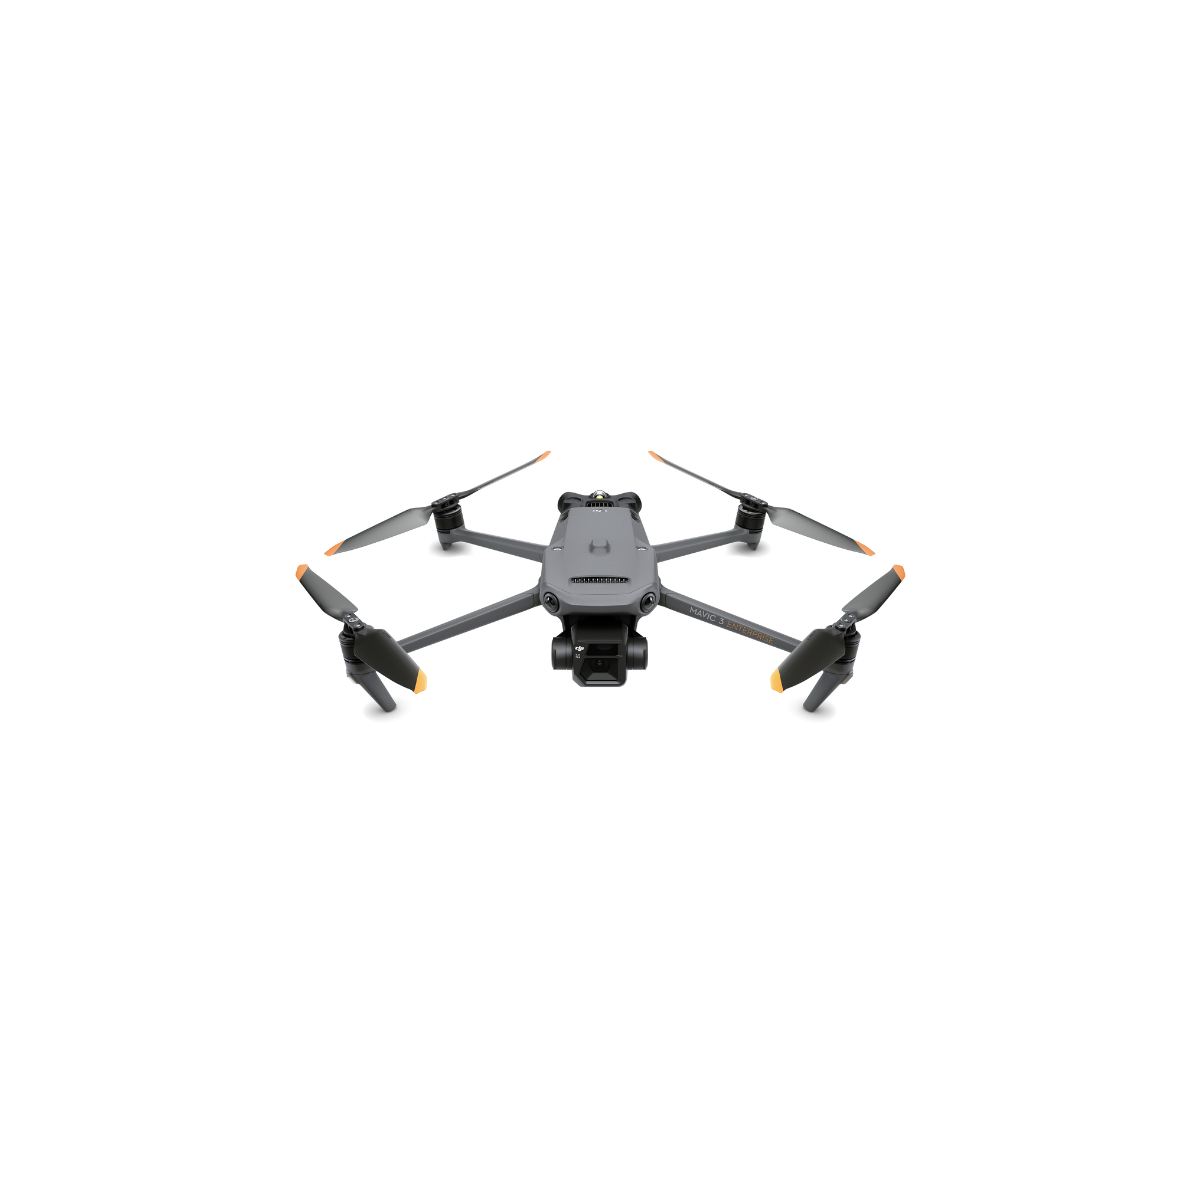 Mavic 3 Lot de 2 hélices pour drone Mavic 3 Series